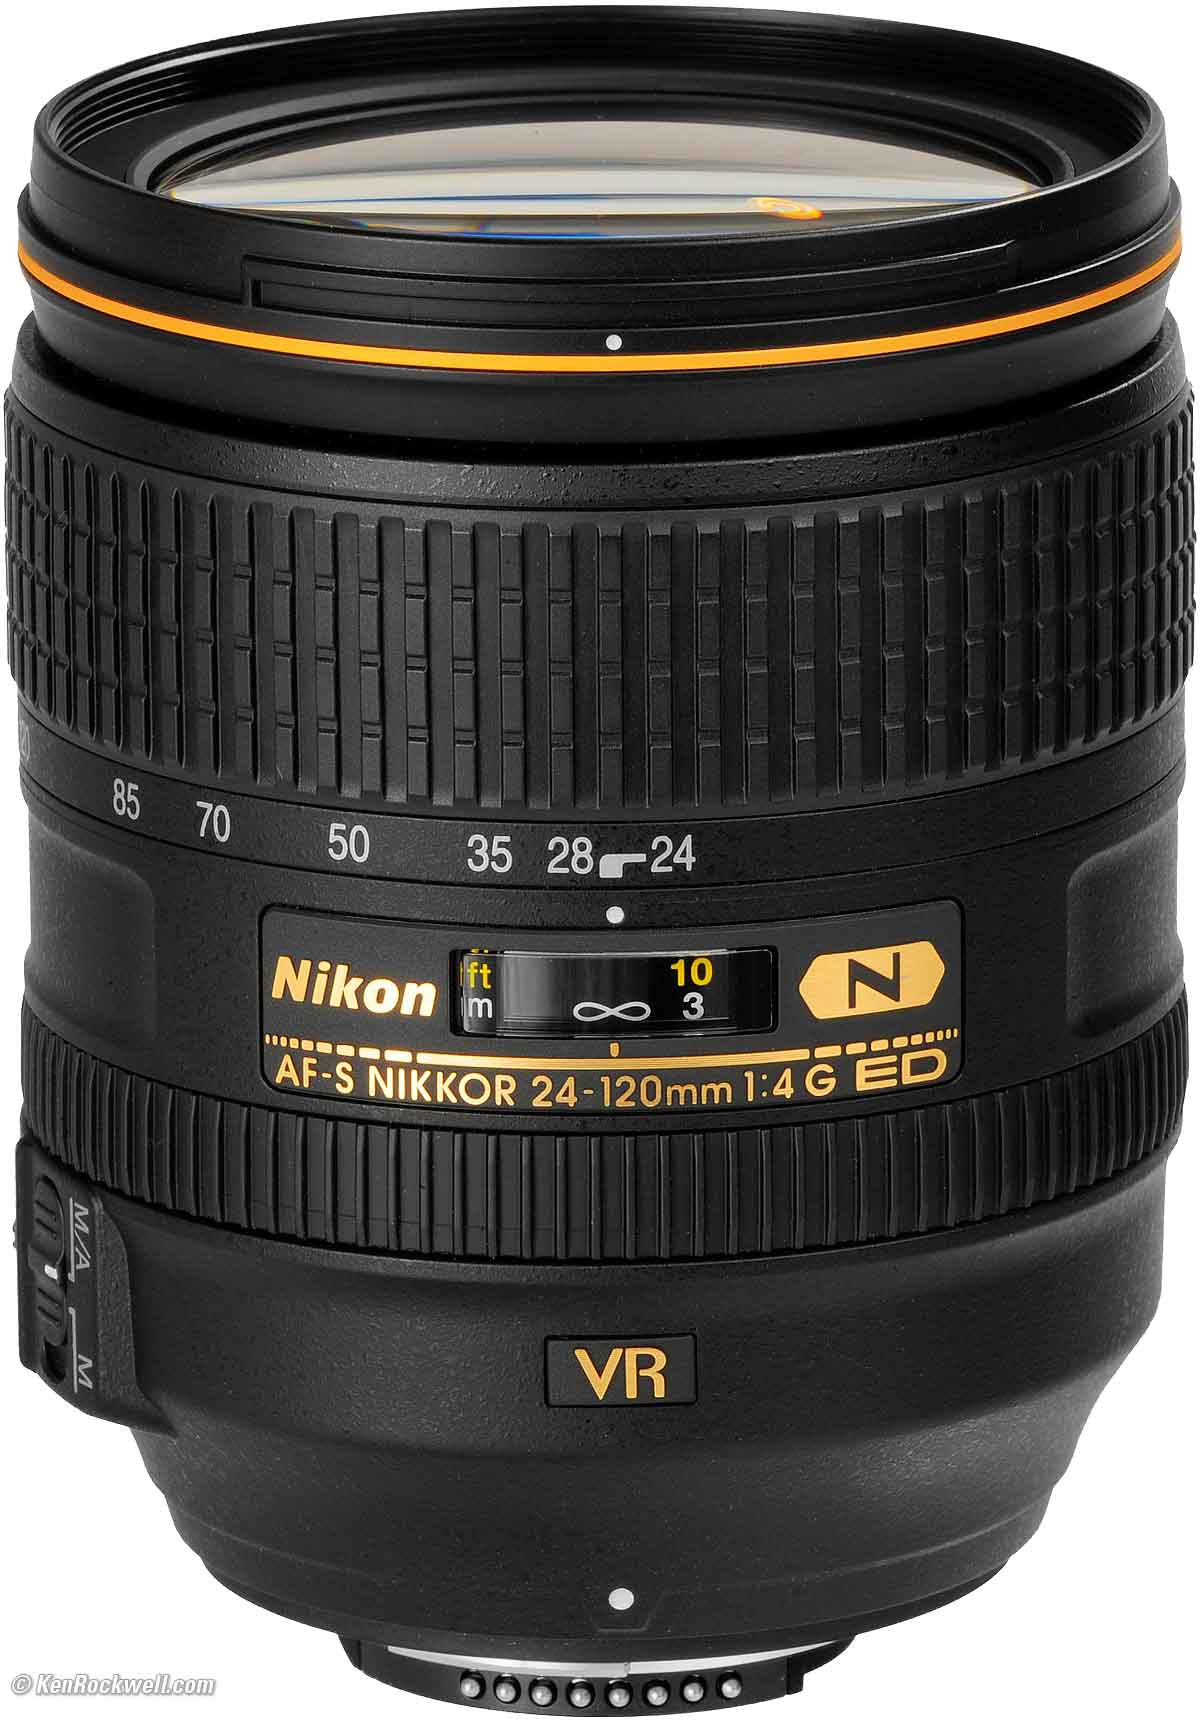 Nikon 24-120mm Review